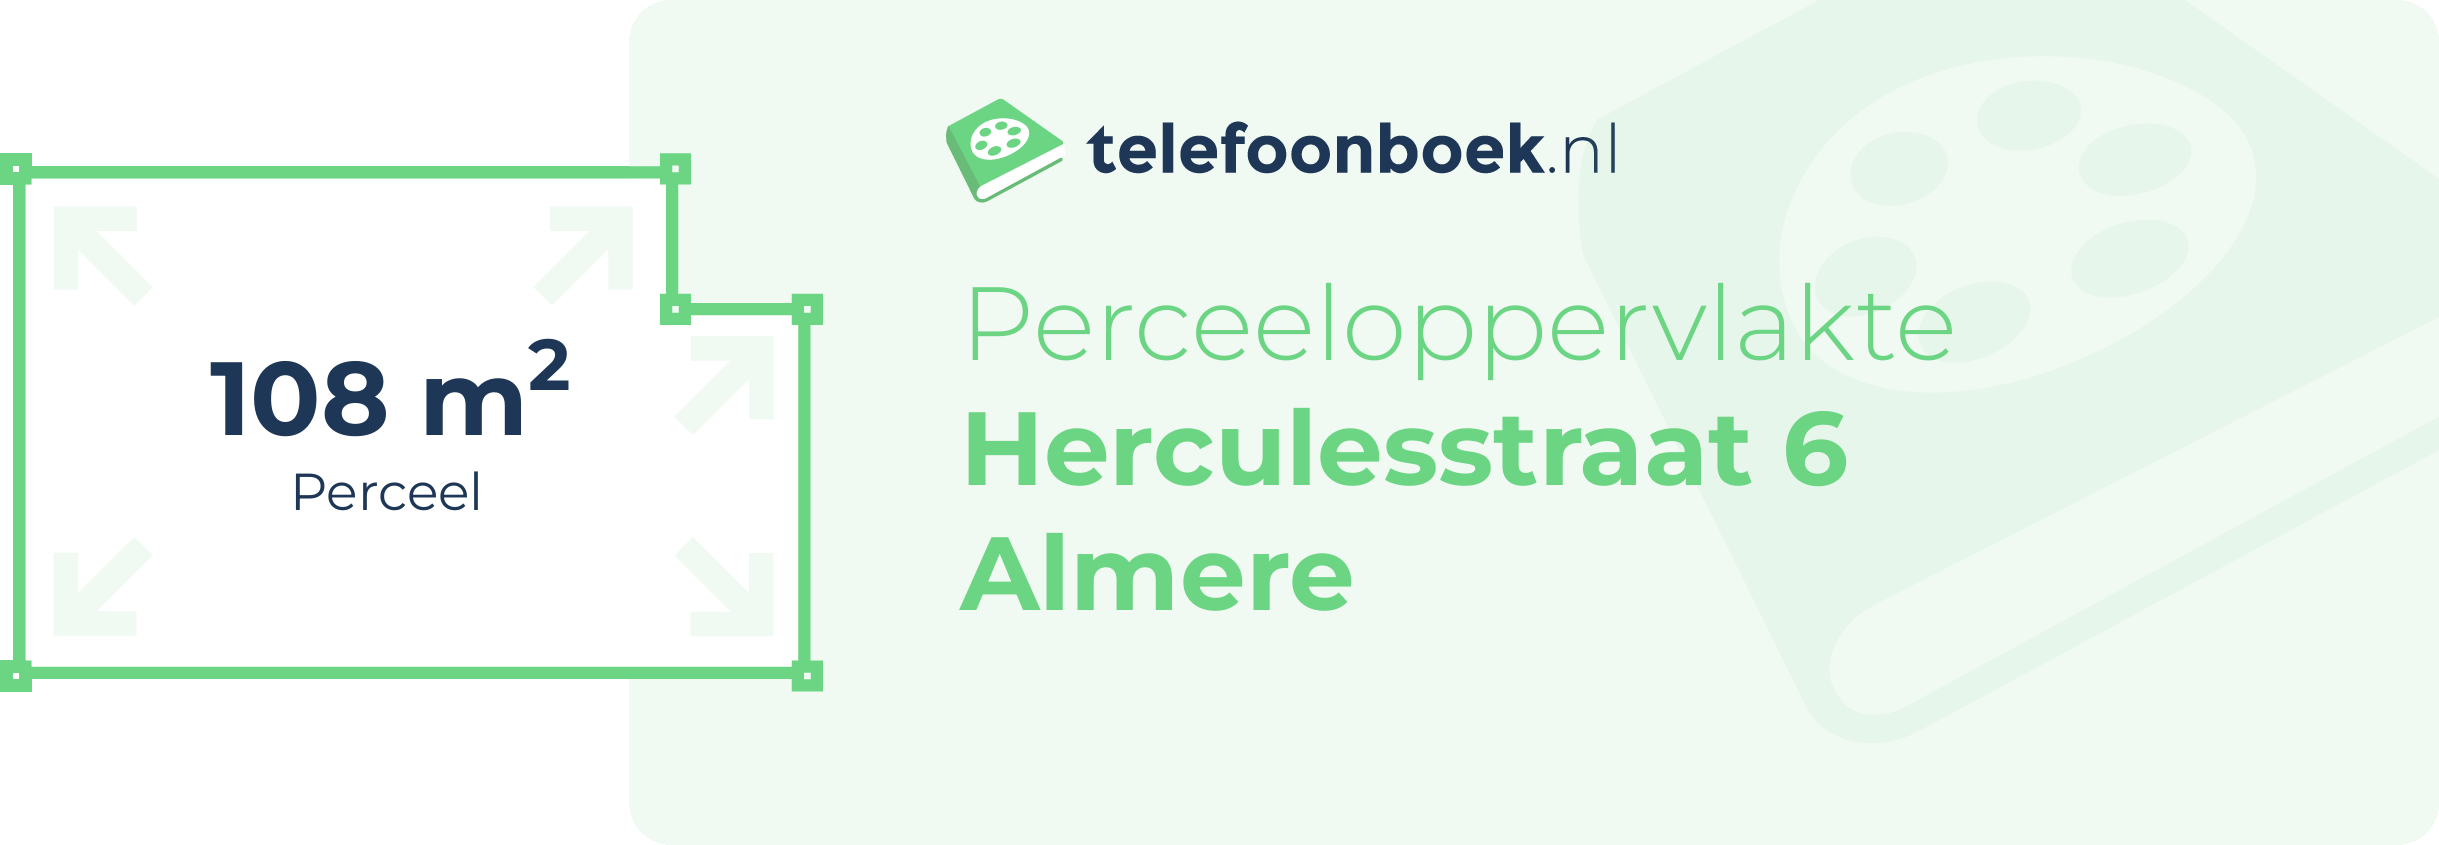 Perceeloppervlakte Herculesstraat 6 Almere